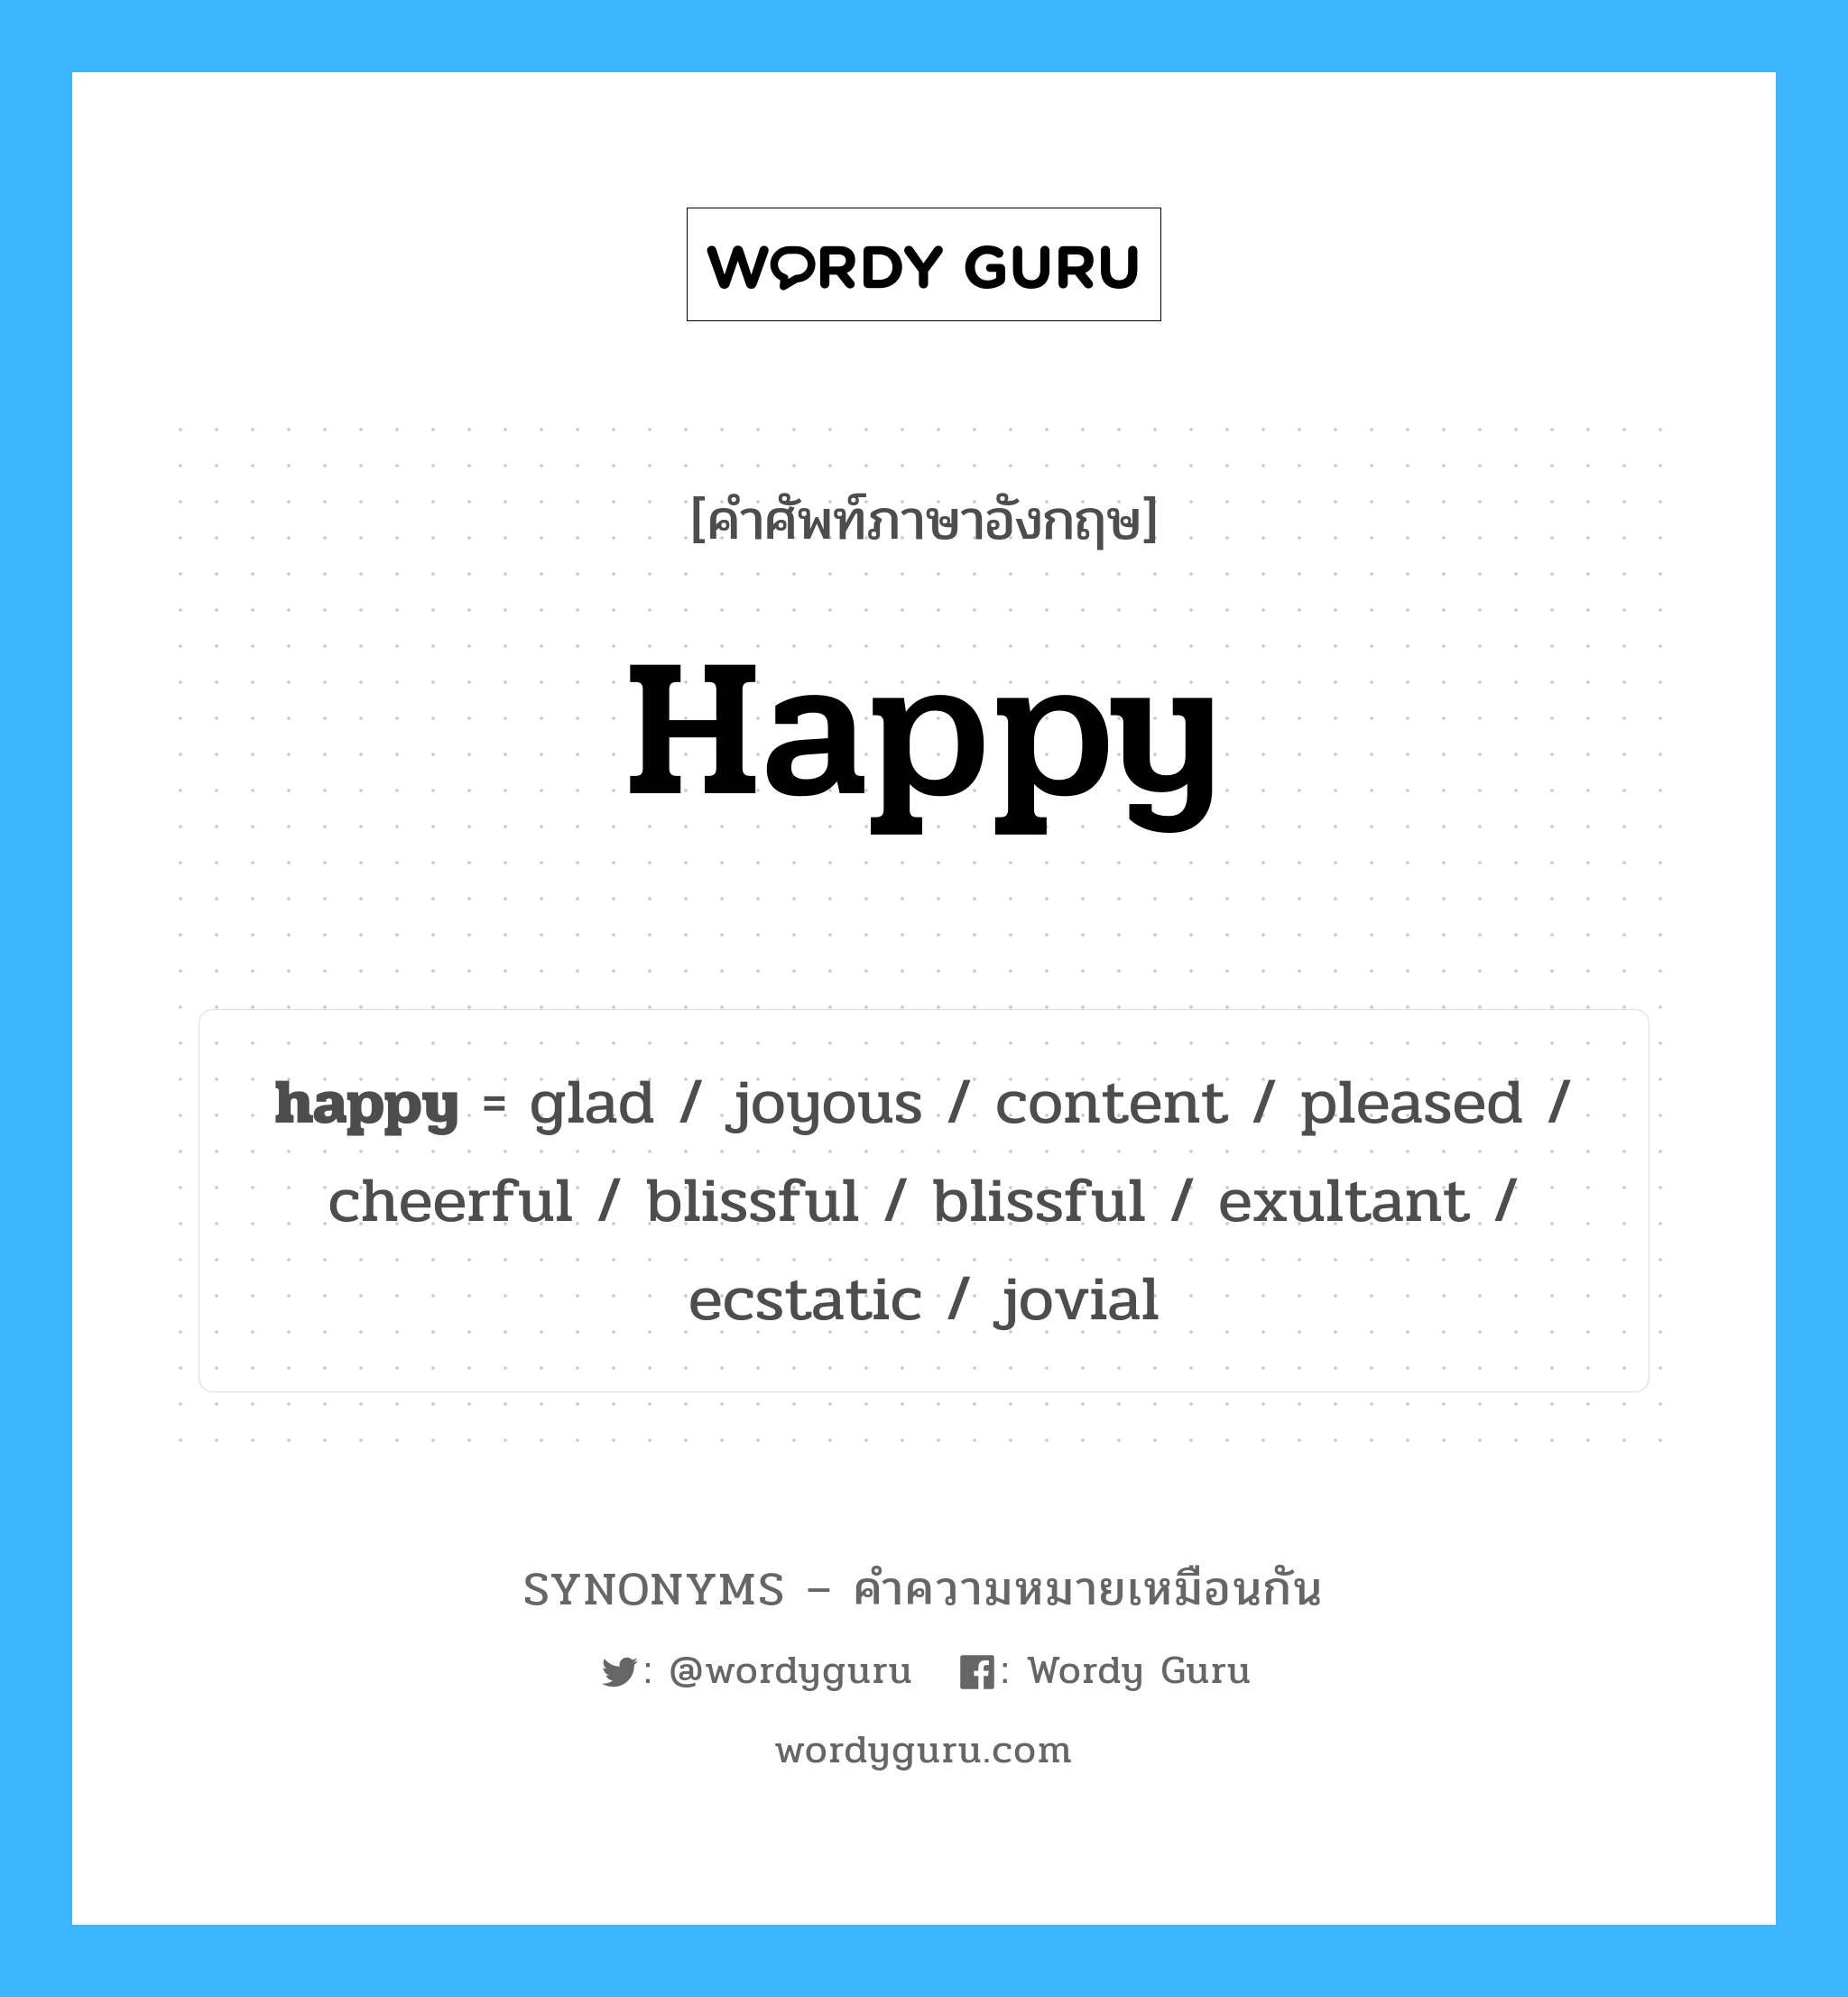 glad เป็นหนึ่งใน happy และมีคำอื่น ๆ อีกดังนี้, คำศัพท์ภาษาอังกฤษ glad ความหมายคล้ายกันกับ happy แปลว่า ดีใจ หมวด happy